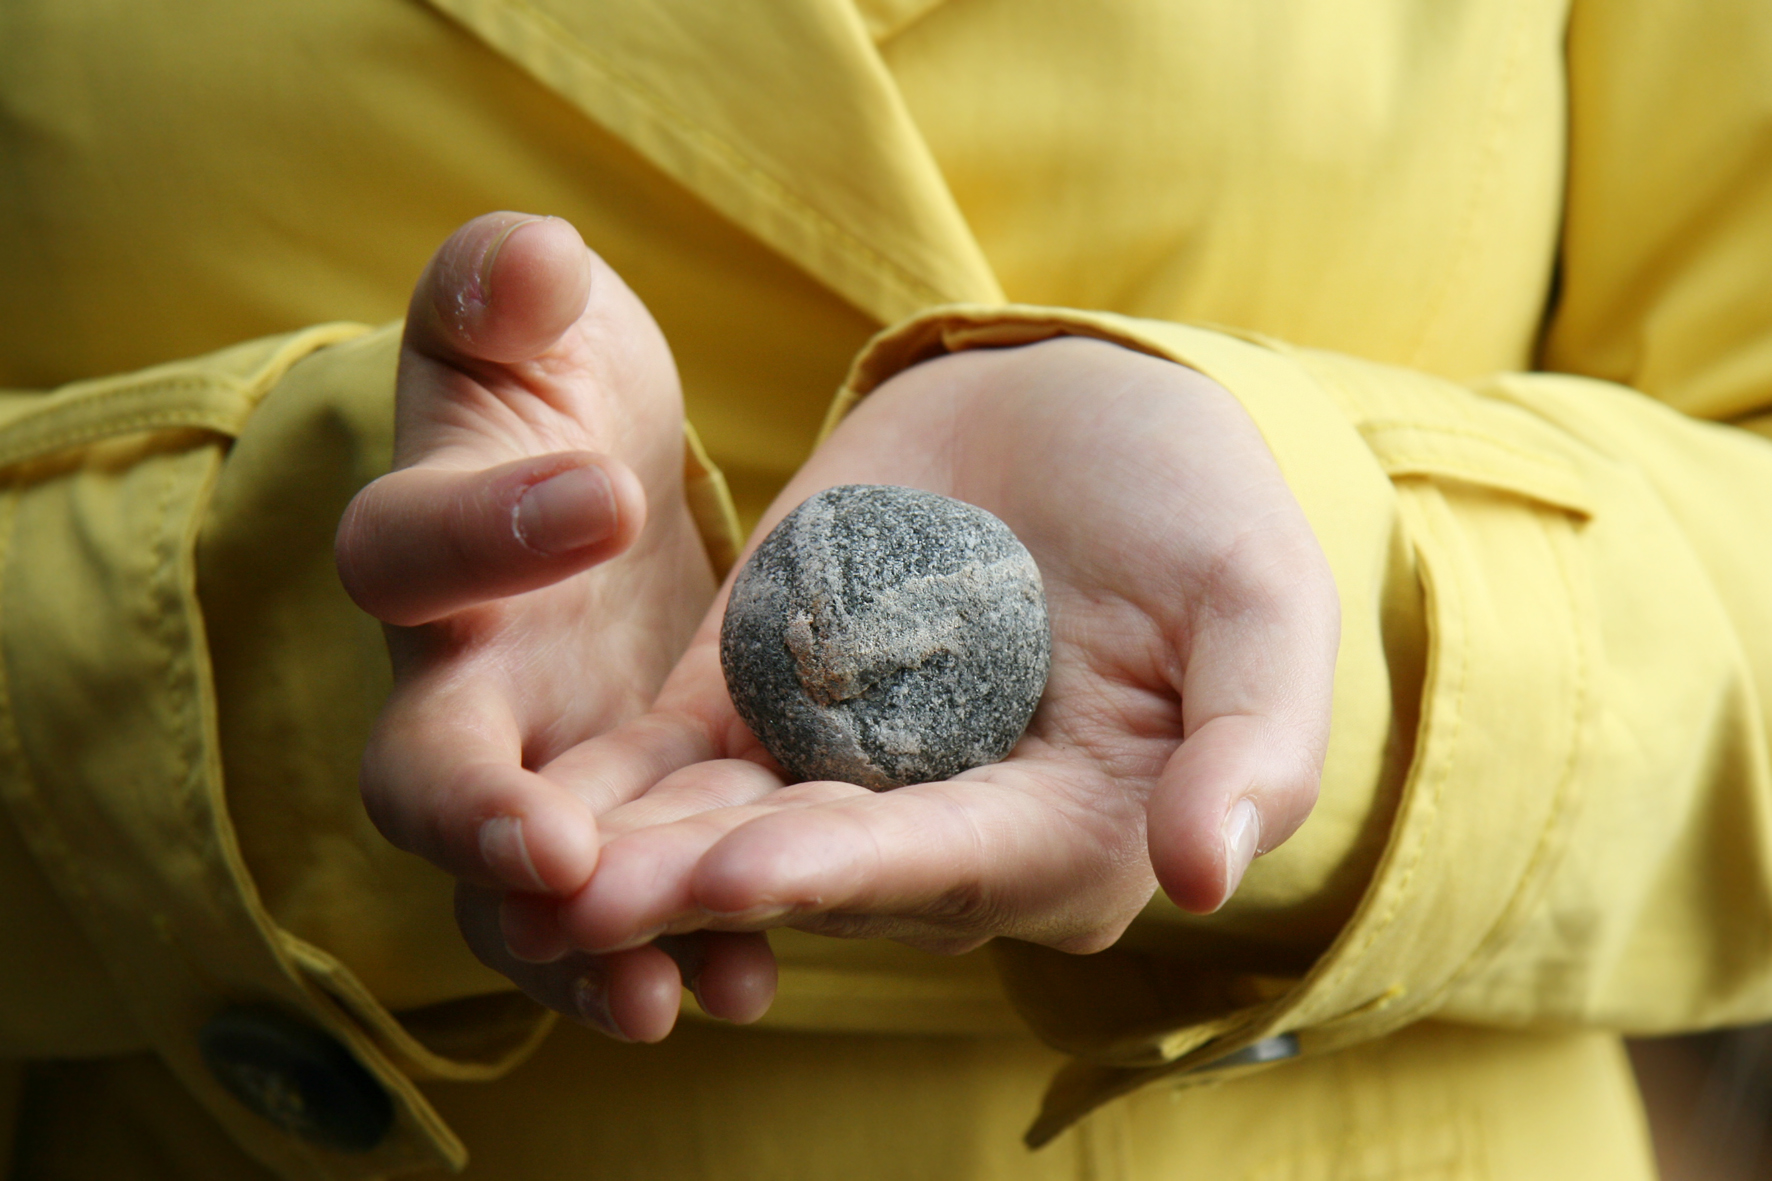 Keltatakkisen ihmisen käsissä pieni, pyöreä kivi. Kuvituskuva.